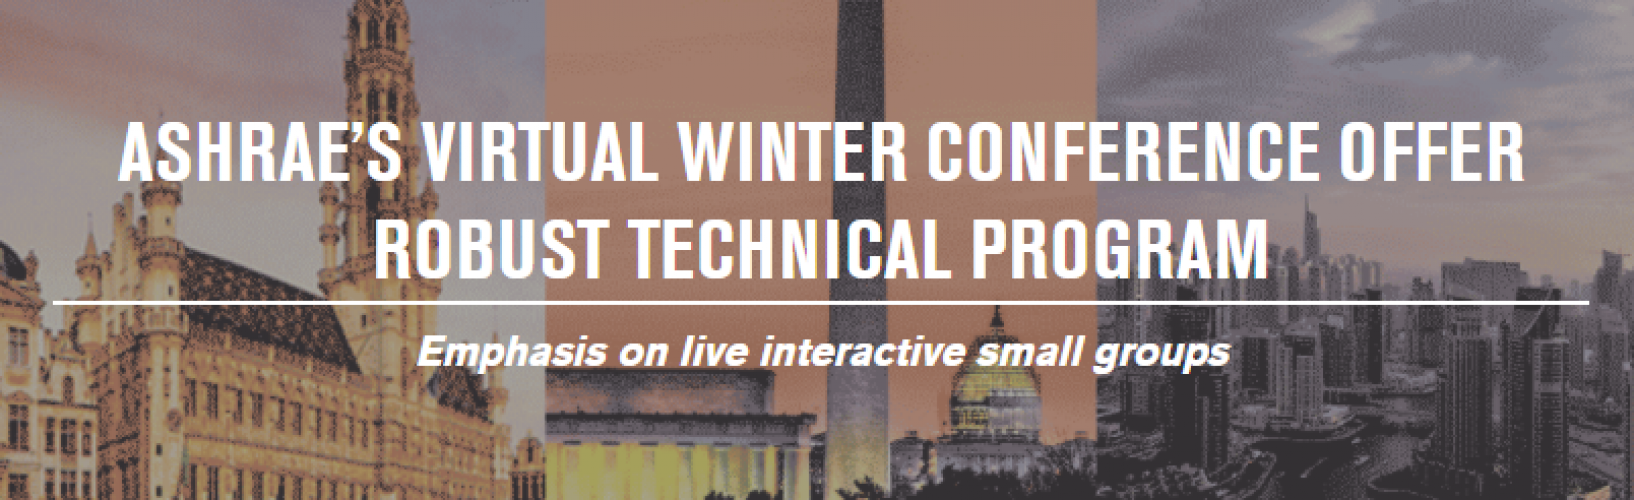 la-conferencia-virtual-de-invierno-de-ashrae-ofrece-un-programa-tcnico-slido